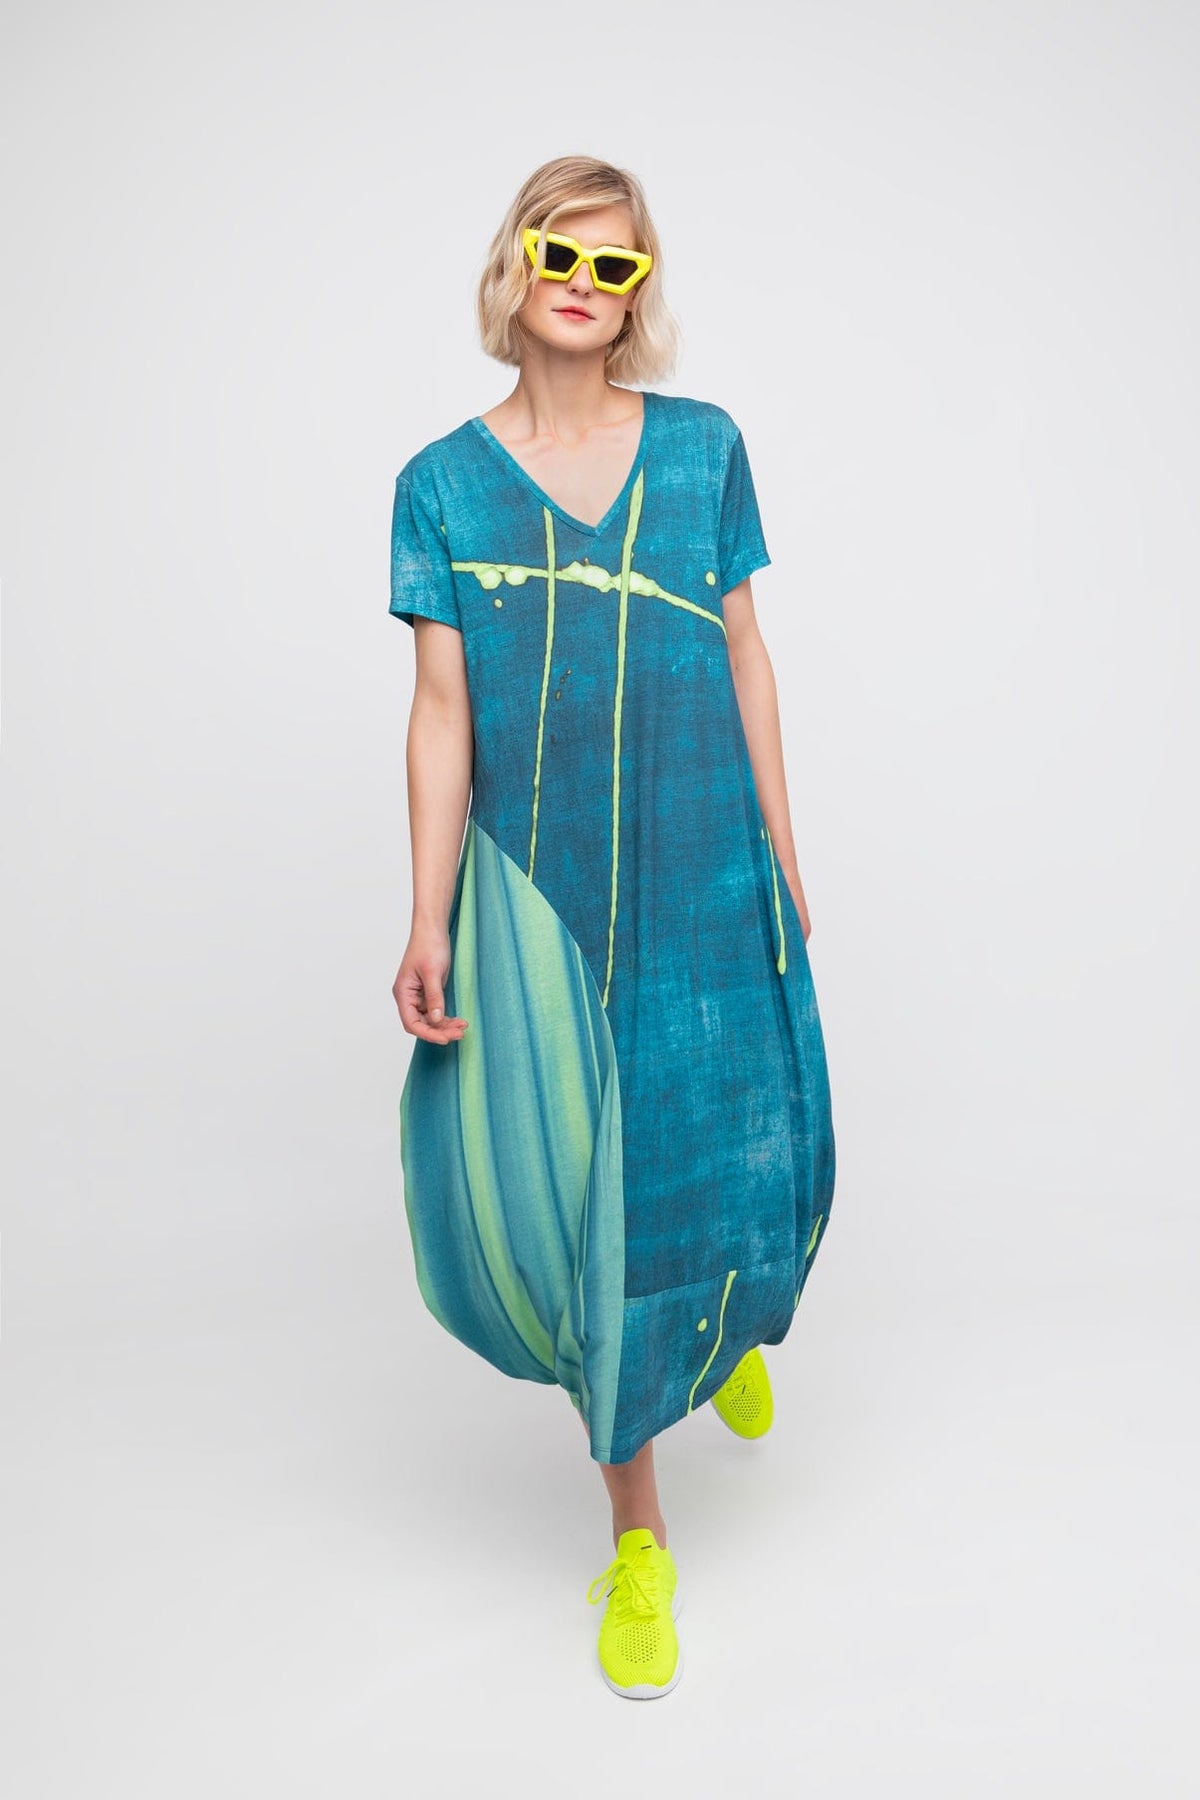 OZAI N KU  Abstract print dress